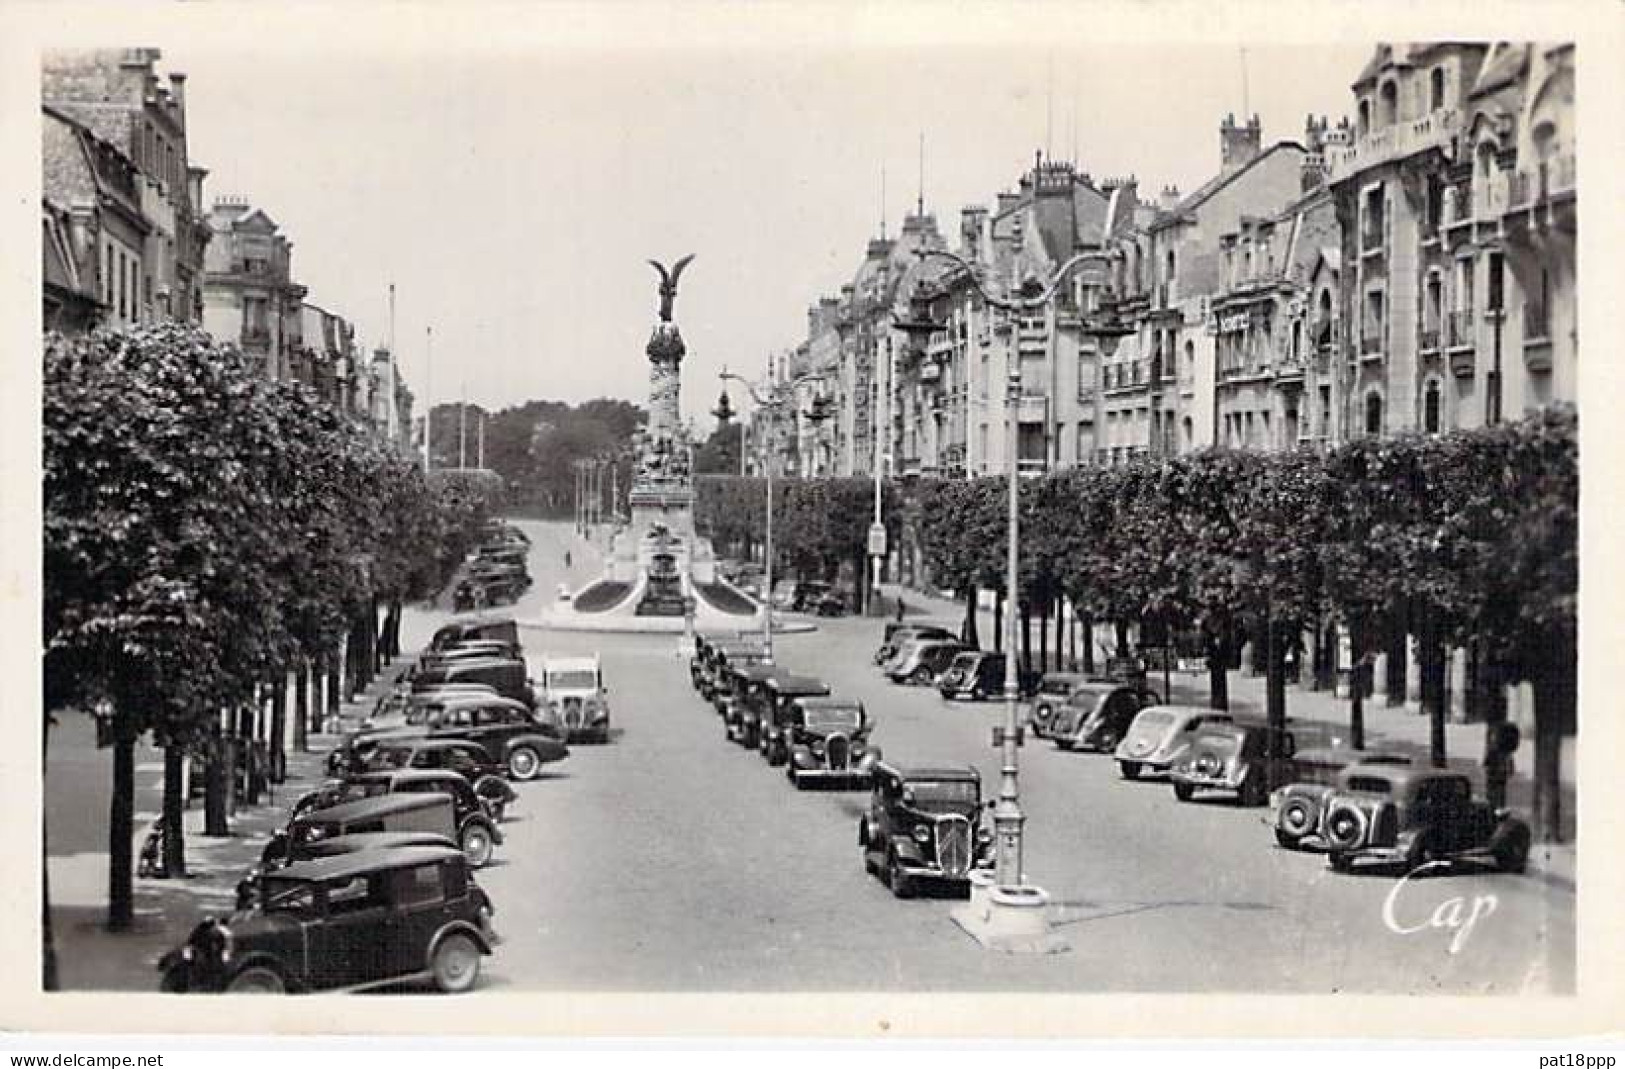 FRANCE - Lot De 20 CPSM Photos Noir Et Blanc Format CPA Années 1945-1960's En BON ETAT (Cf Détails Dans Description) - 5 - 99 Postcards